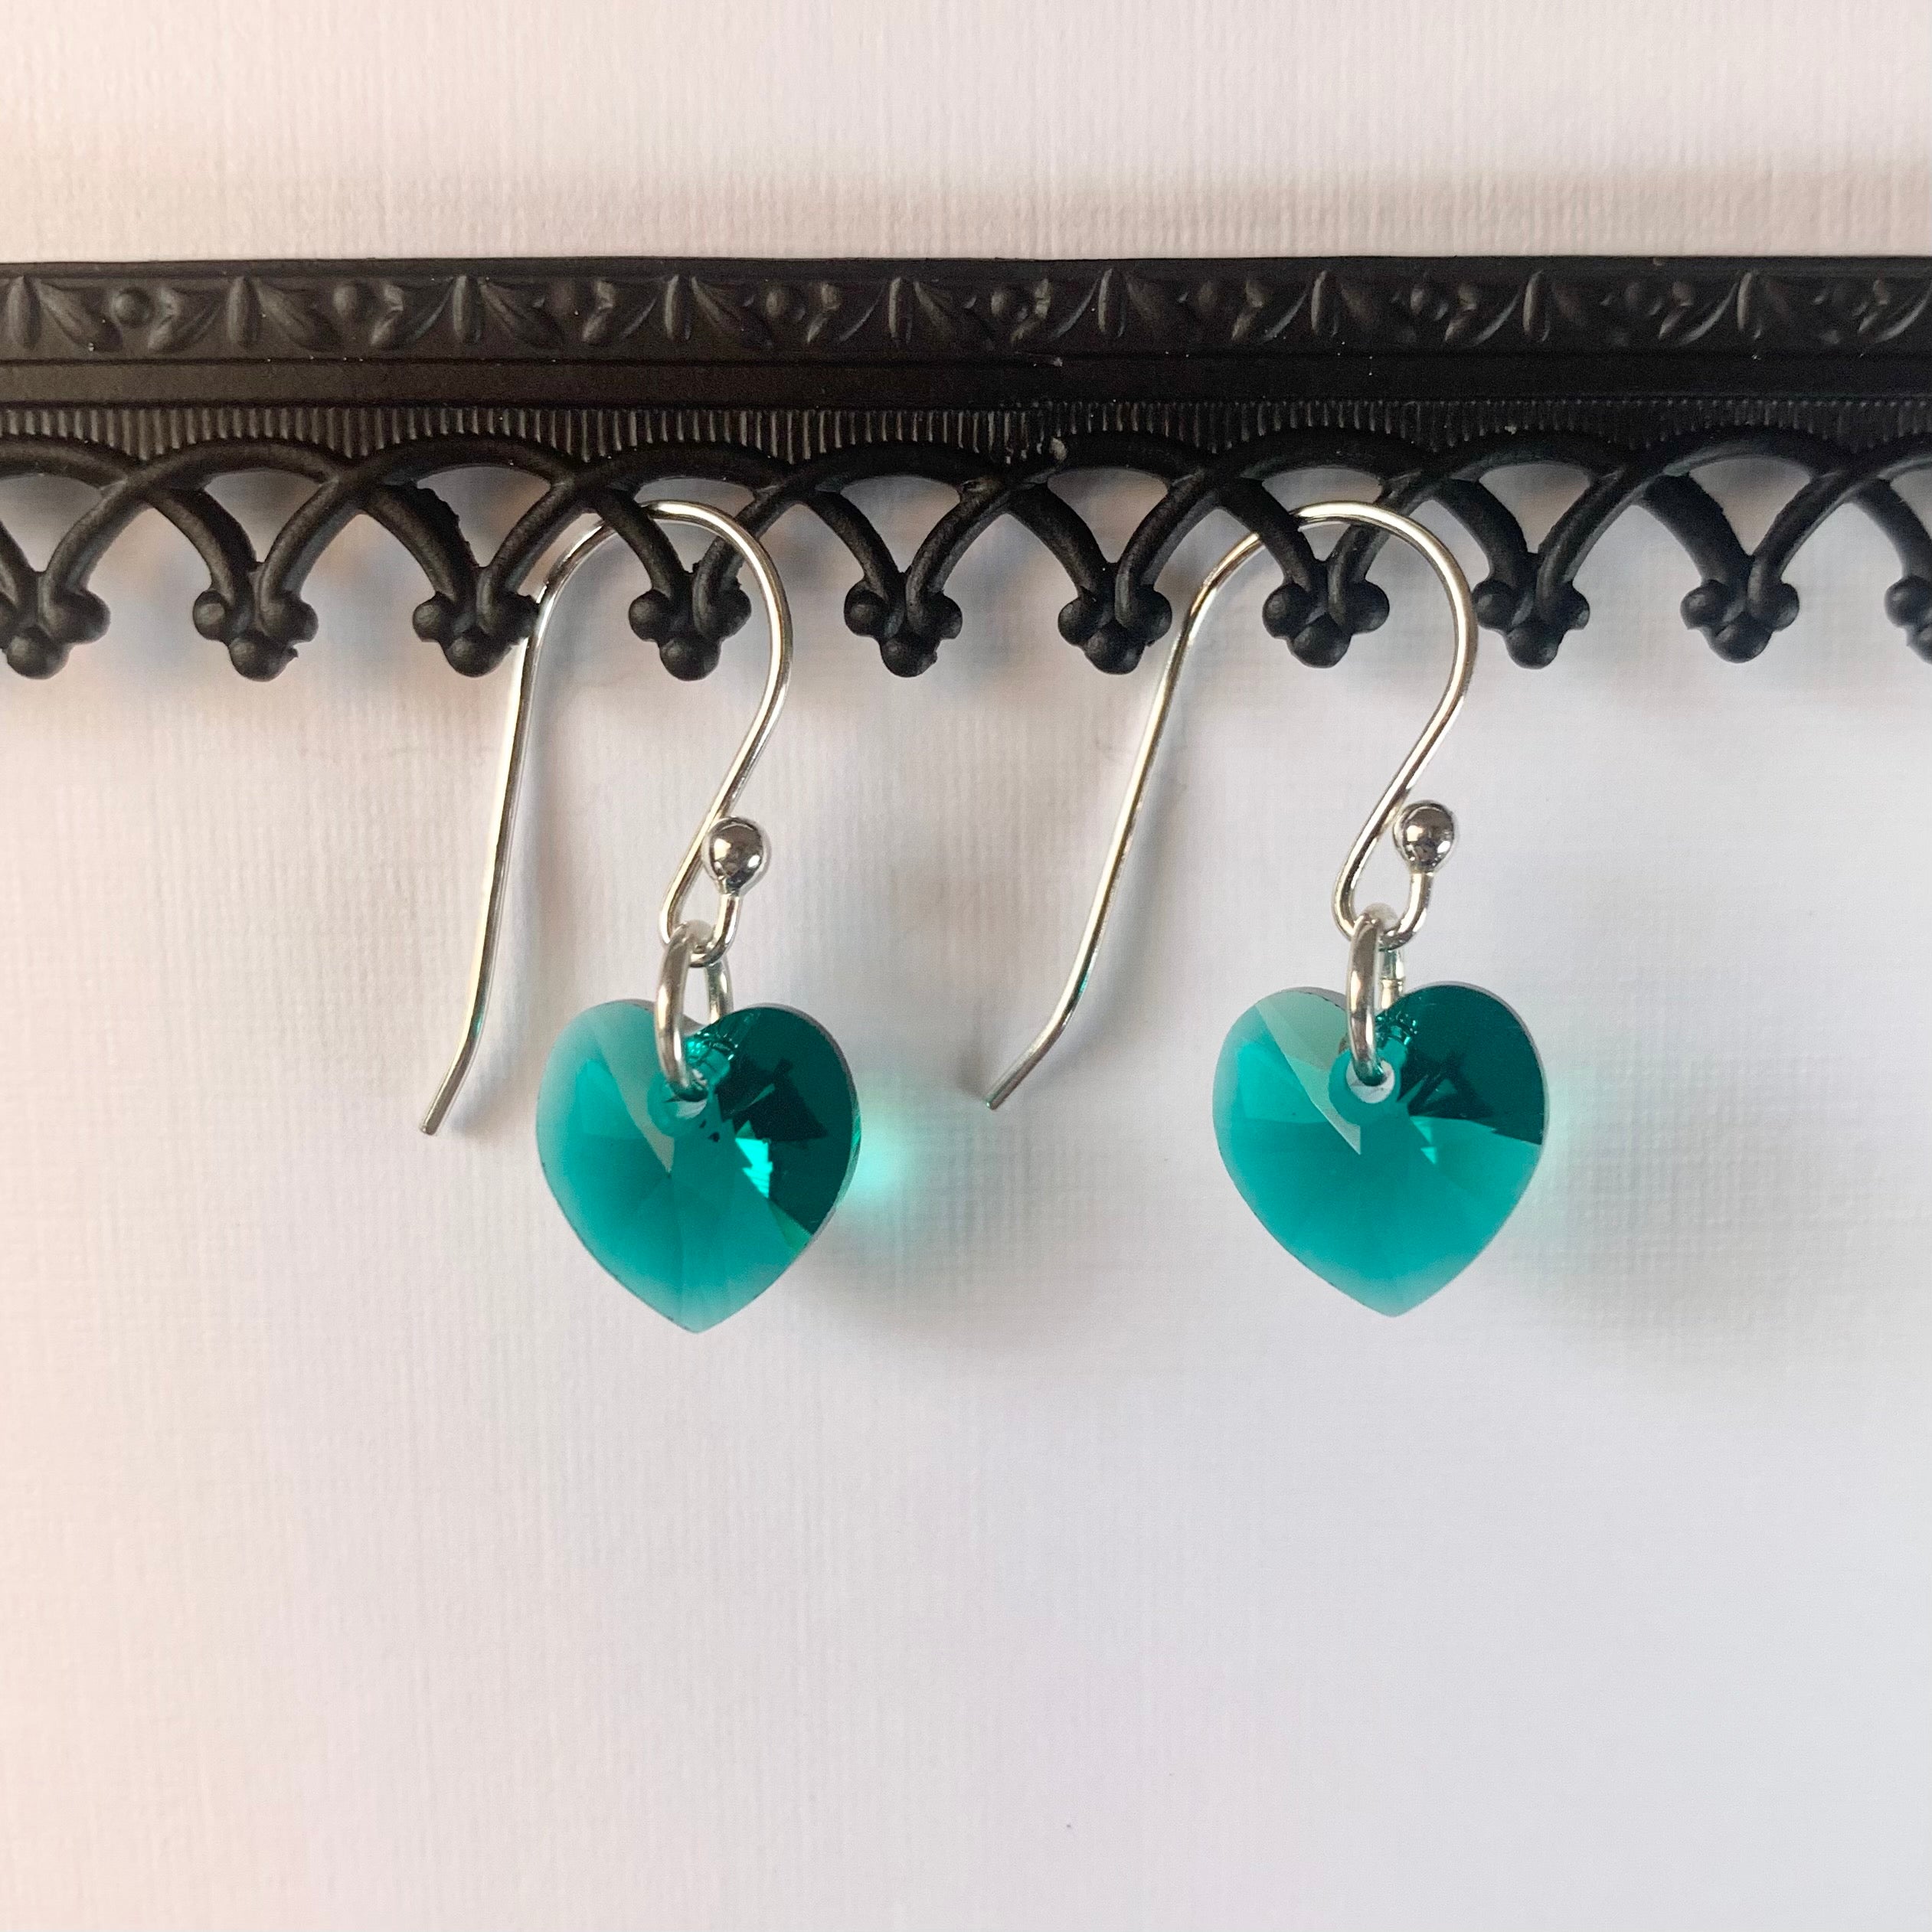 Sparkle heart earrings - Swarovski crystal hearts in emerald green